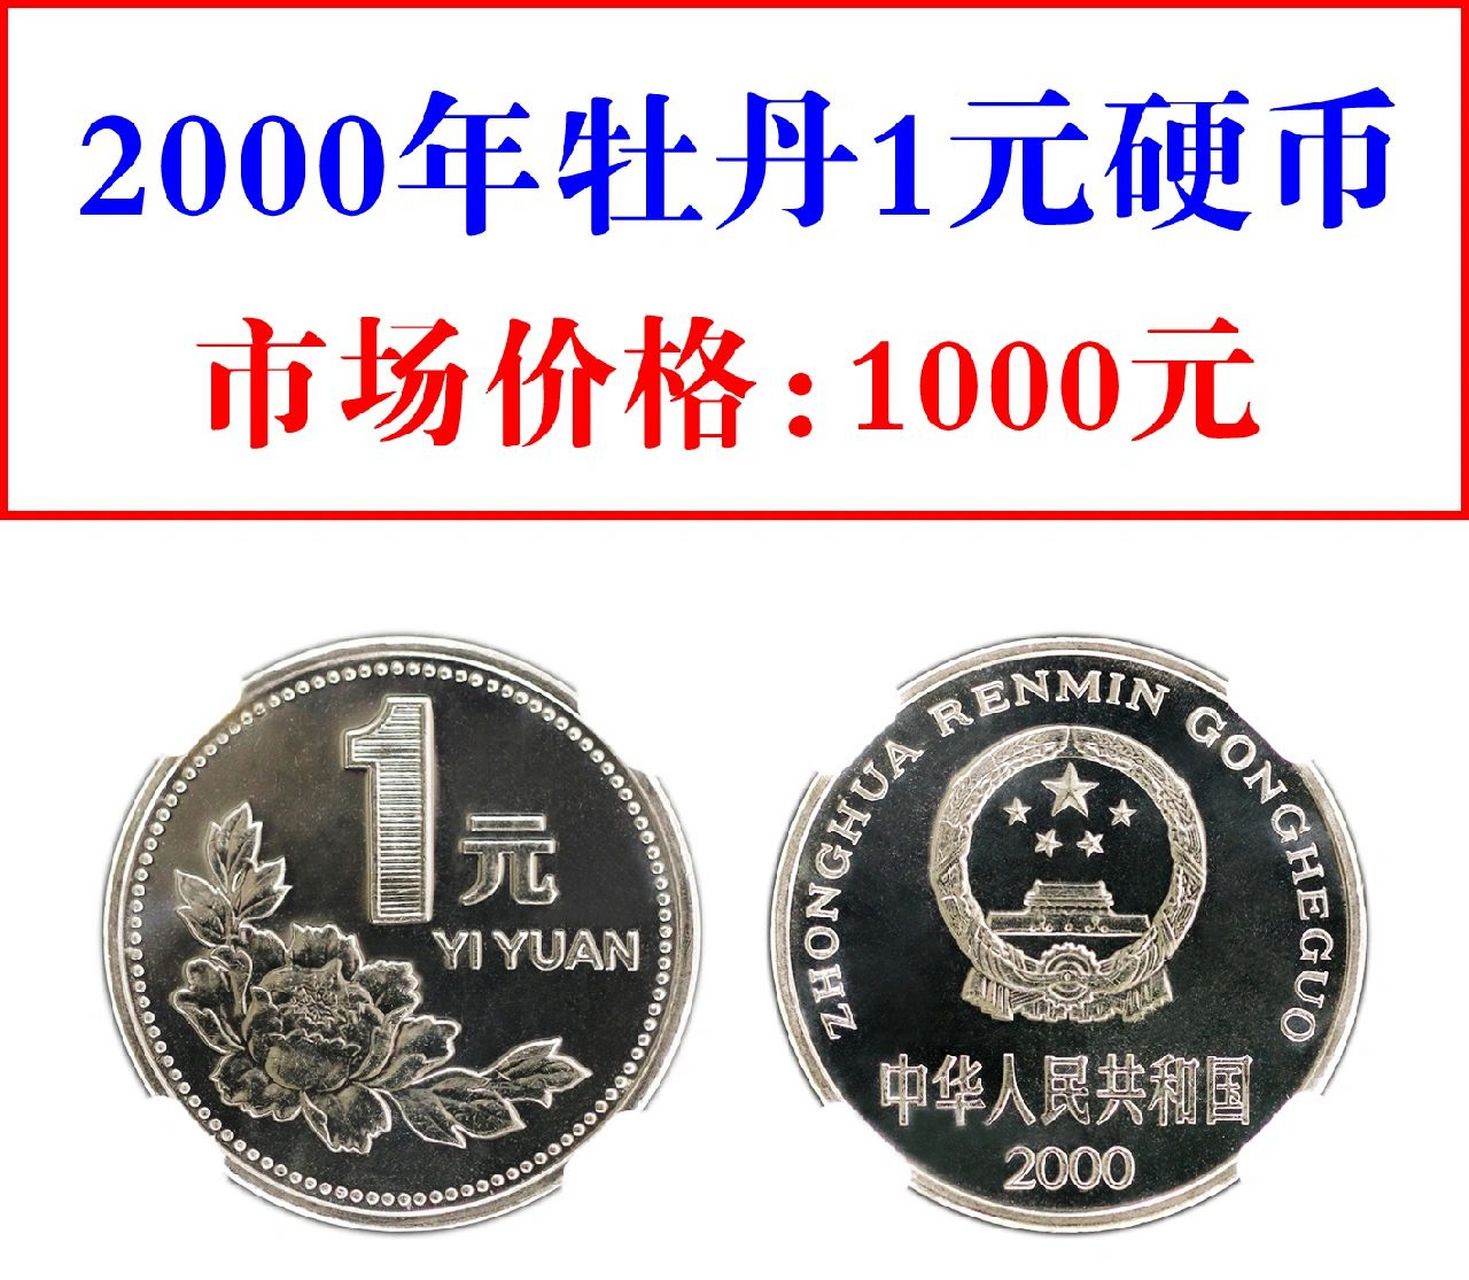 1元牡丹硬币从1991年开始发行,到2000年为止,一共发行了十个年份